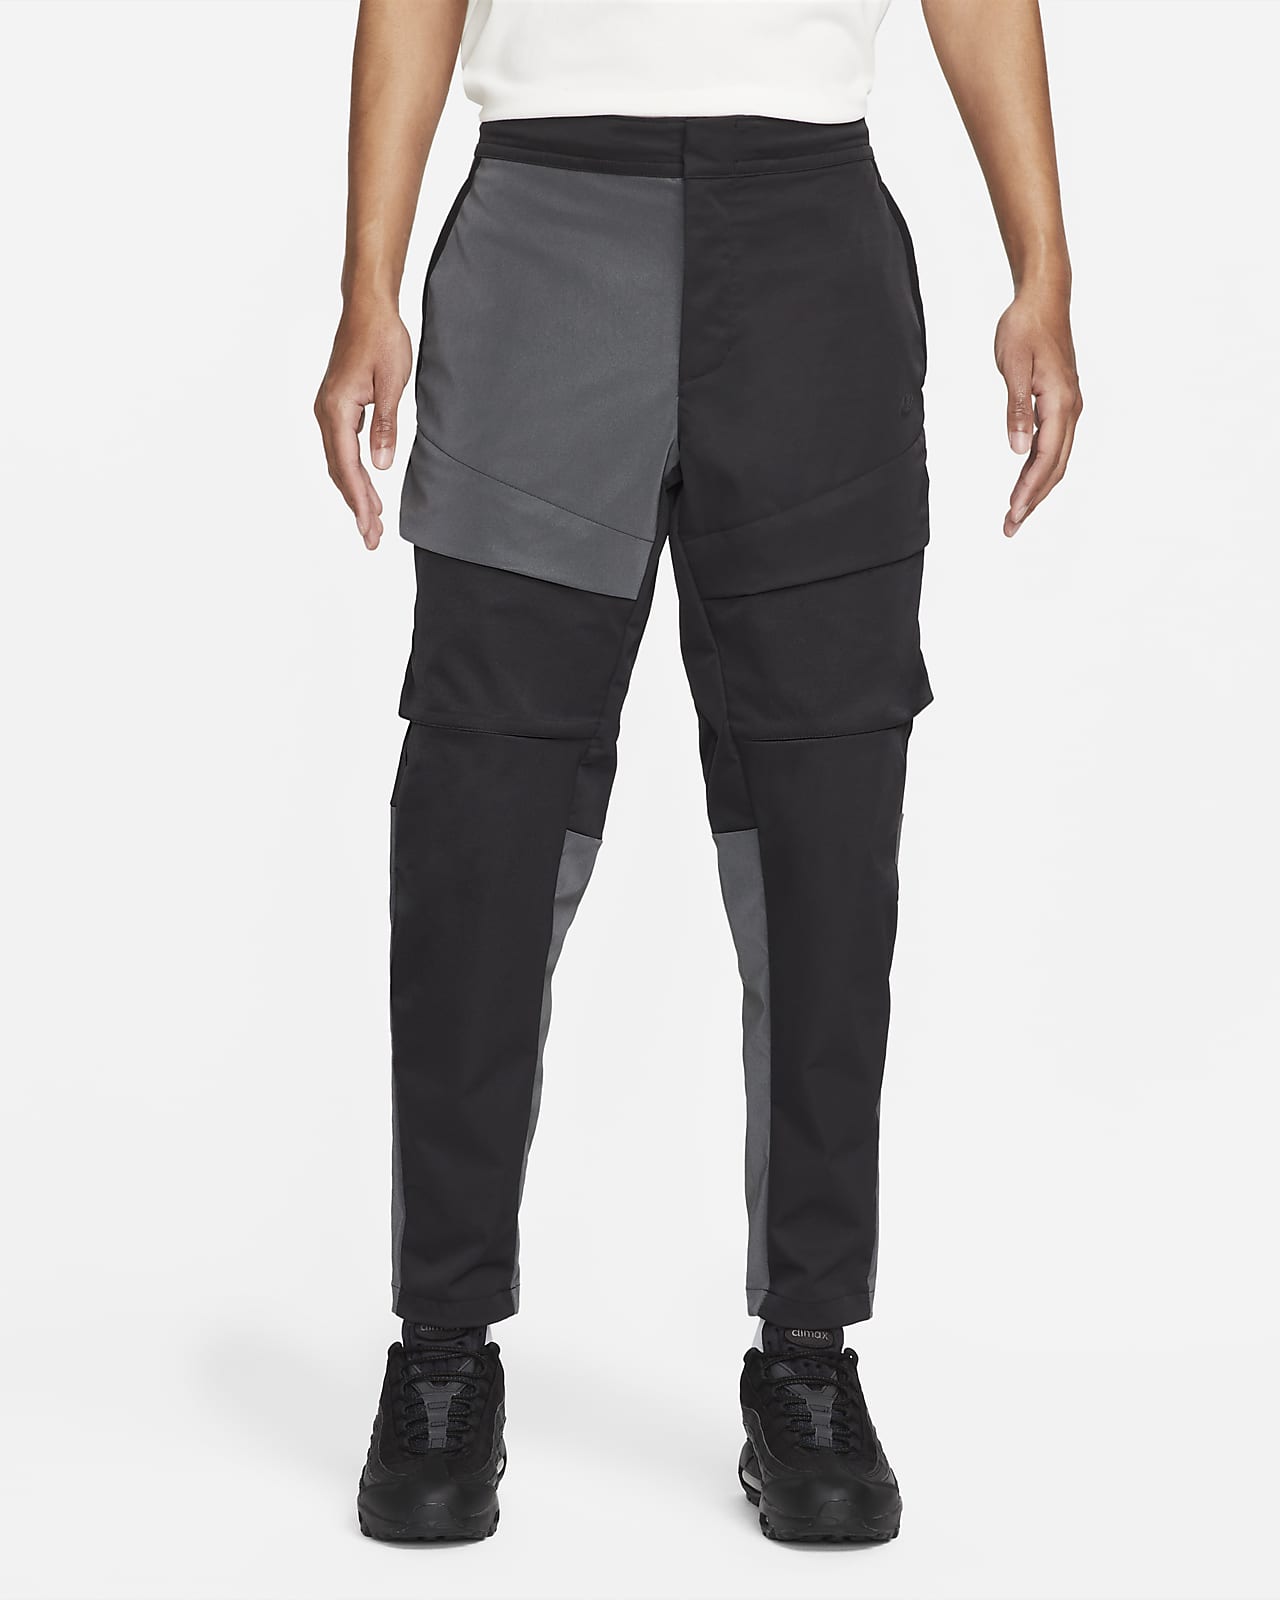 Nike Sportswear Tech Pack Men's Reflective Unlined Cargo Pants